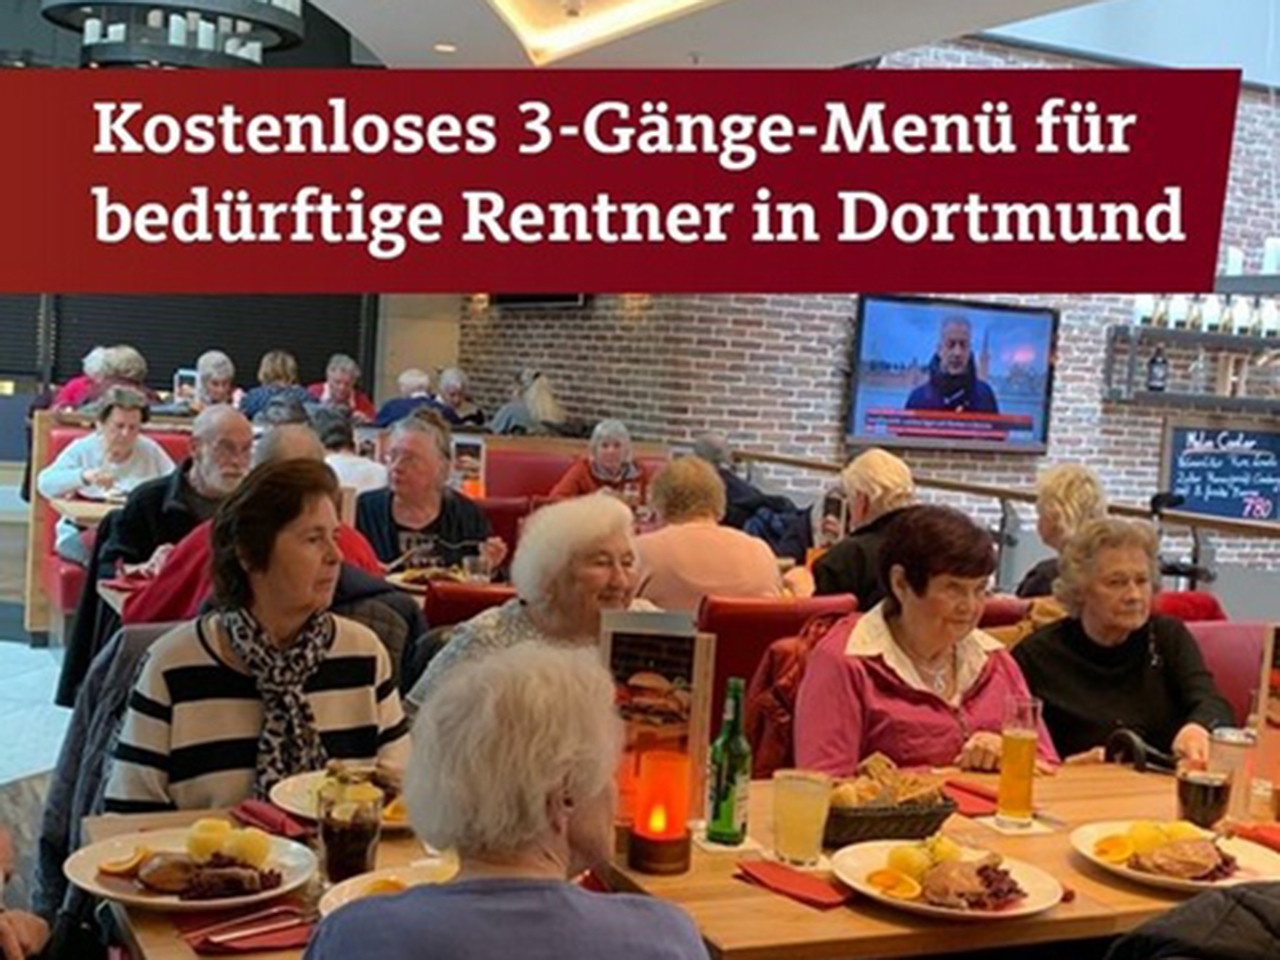 Kostenloses 3-Gänge-Menü für bedürftige Rentner in Dortmund